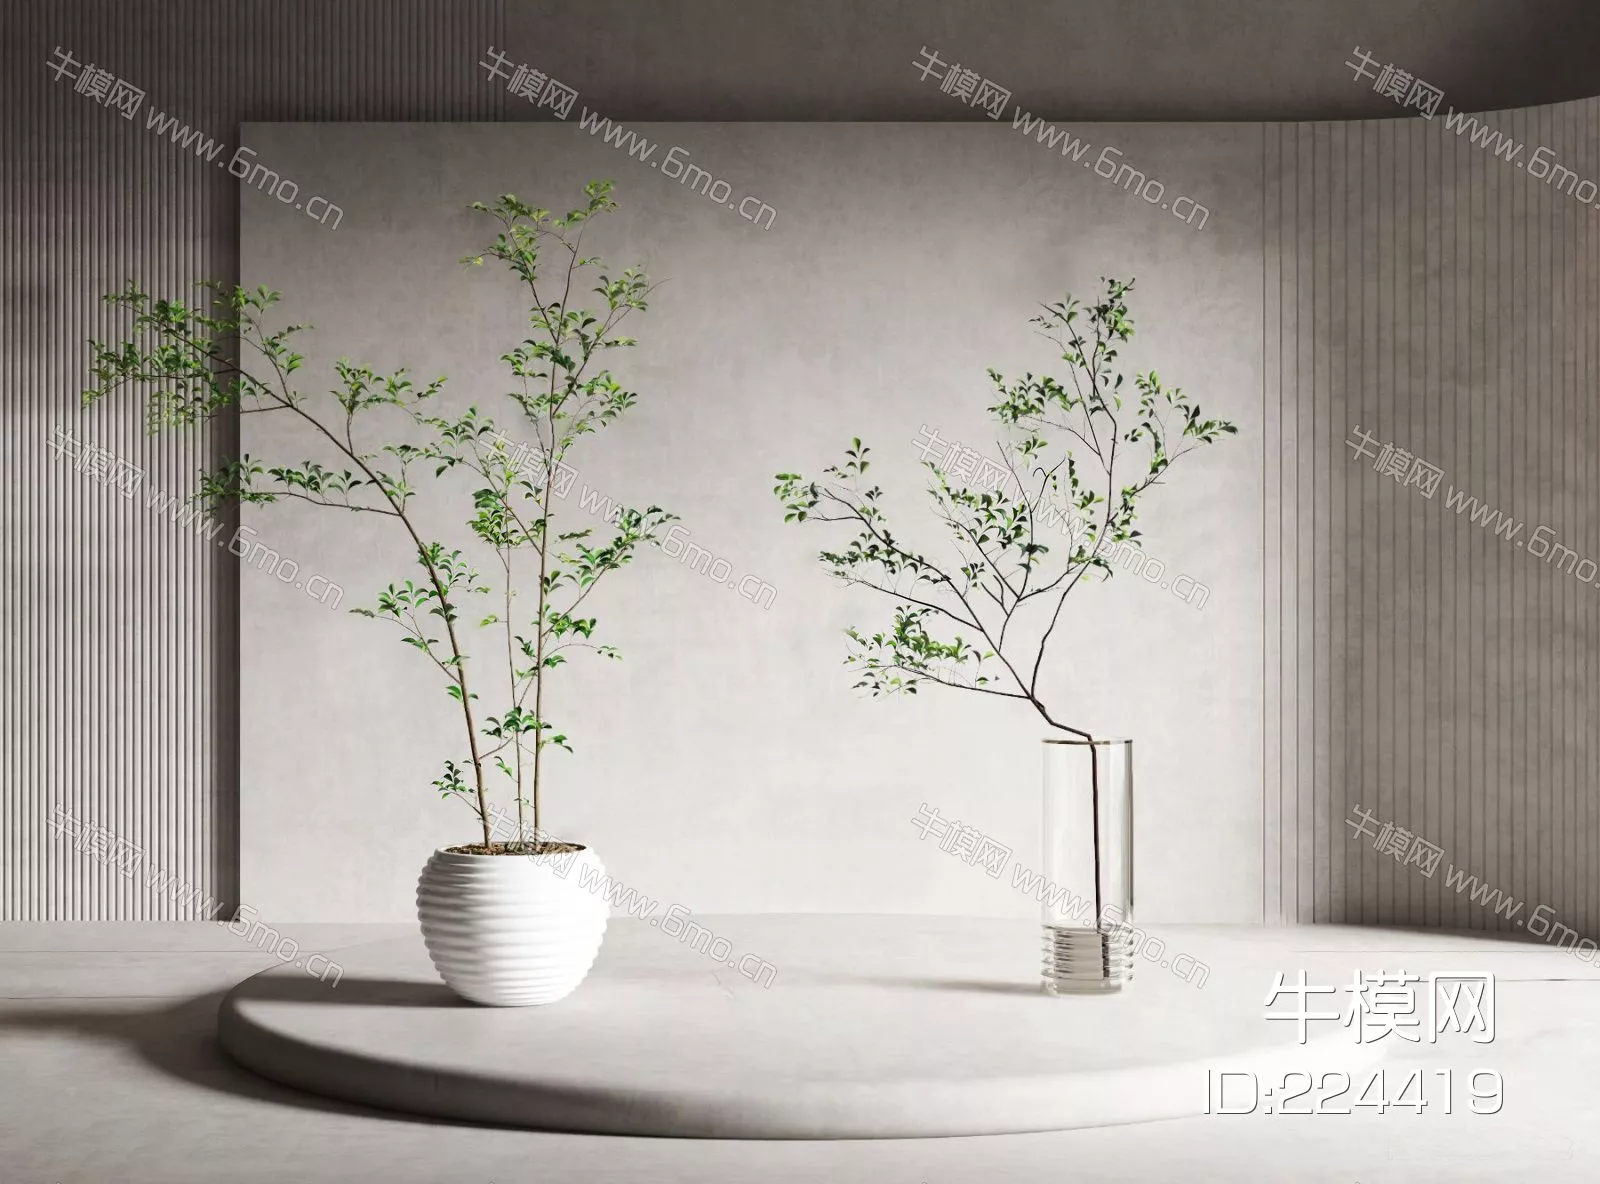 MODERN POTTED PLANT - SKETCHUP 3D MODEL - ENSCAPE - 224419